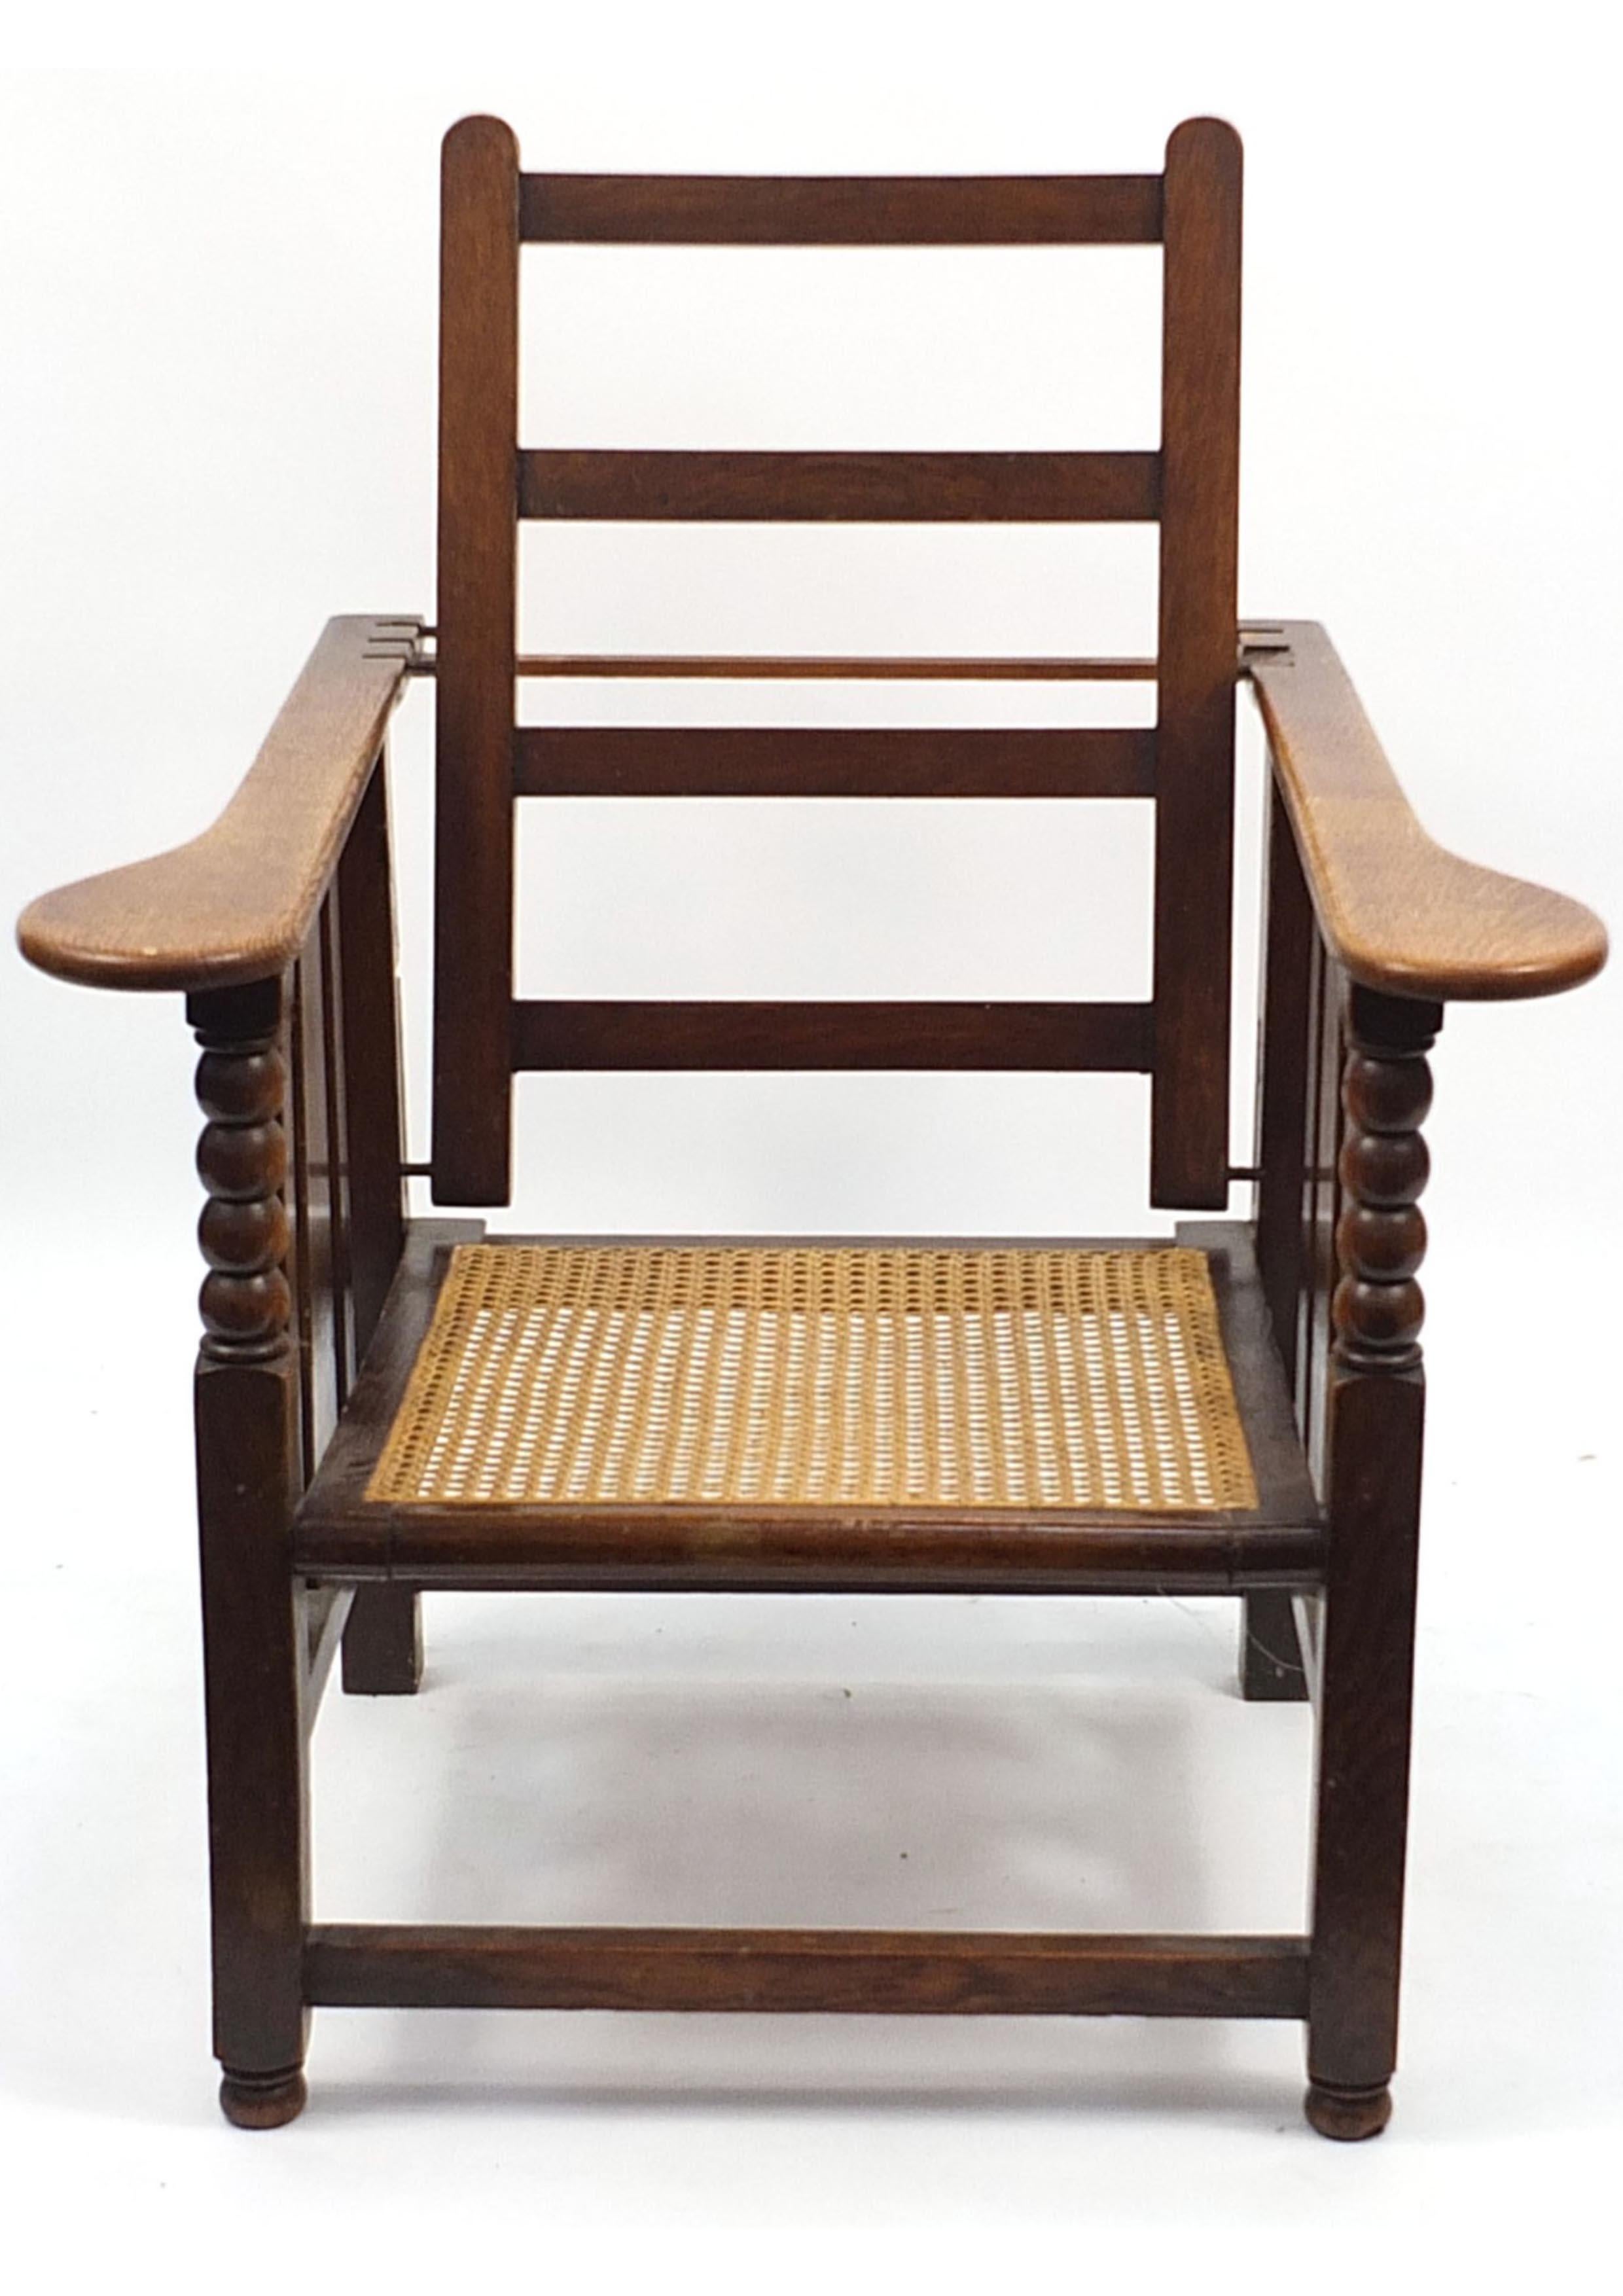 Ein britischer Arts & Crafts Cane Reclining Armchair.

Exquisiter Liegestuhl für den Innen- oder Außenbereich, der sich sowohl für historische als auch für moderne Wohnräume eignet.

